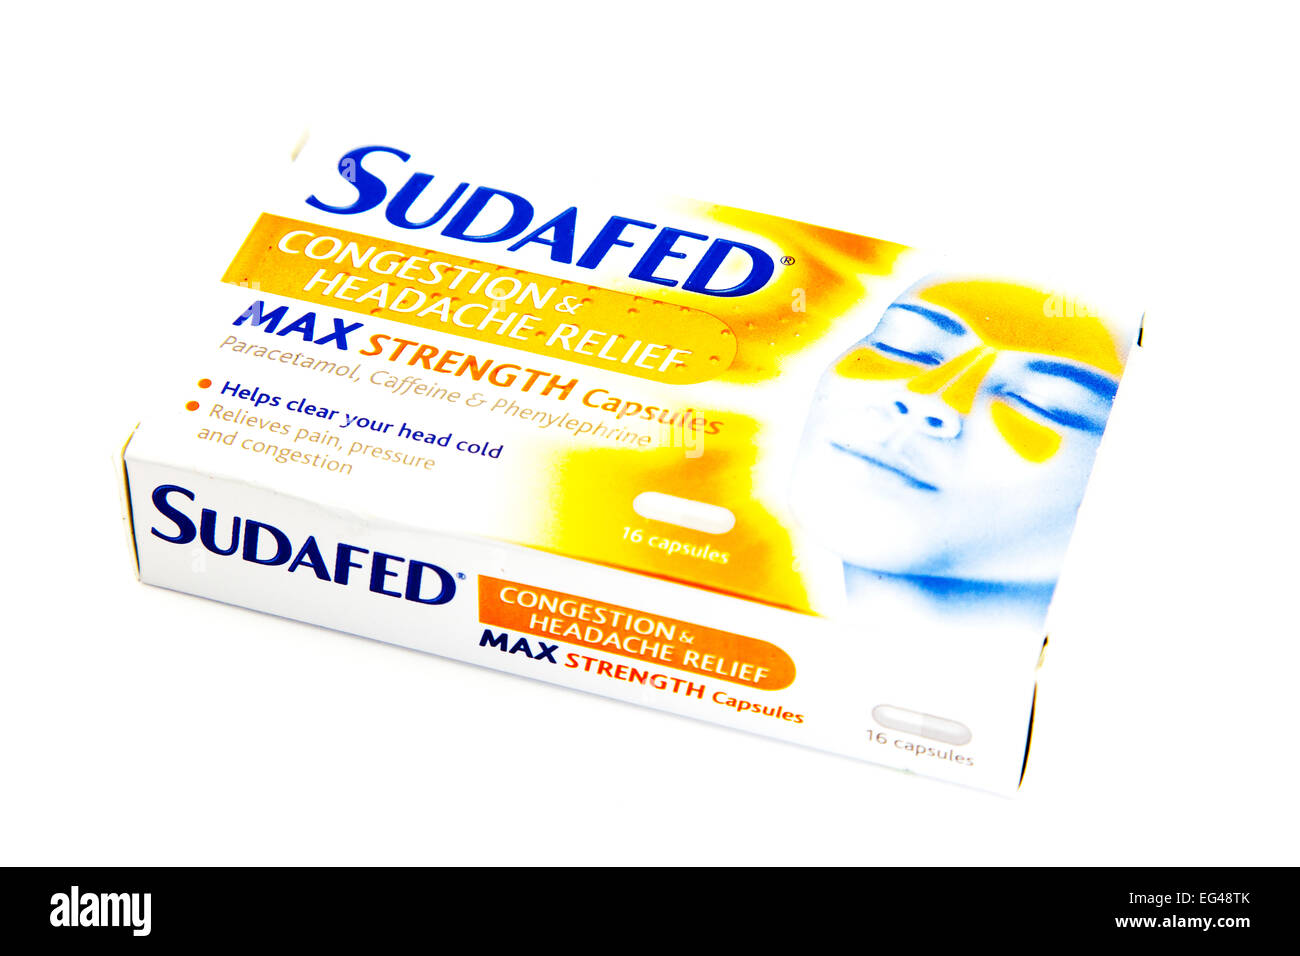 Maux de tête congestion force max Sudafed remède de secours médicaments grippe froide découper fond blanc Banque D'Images